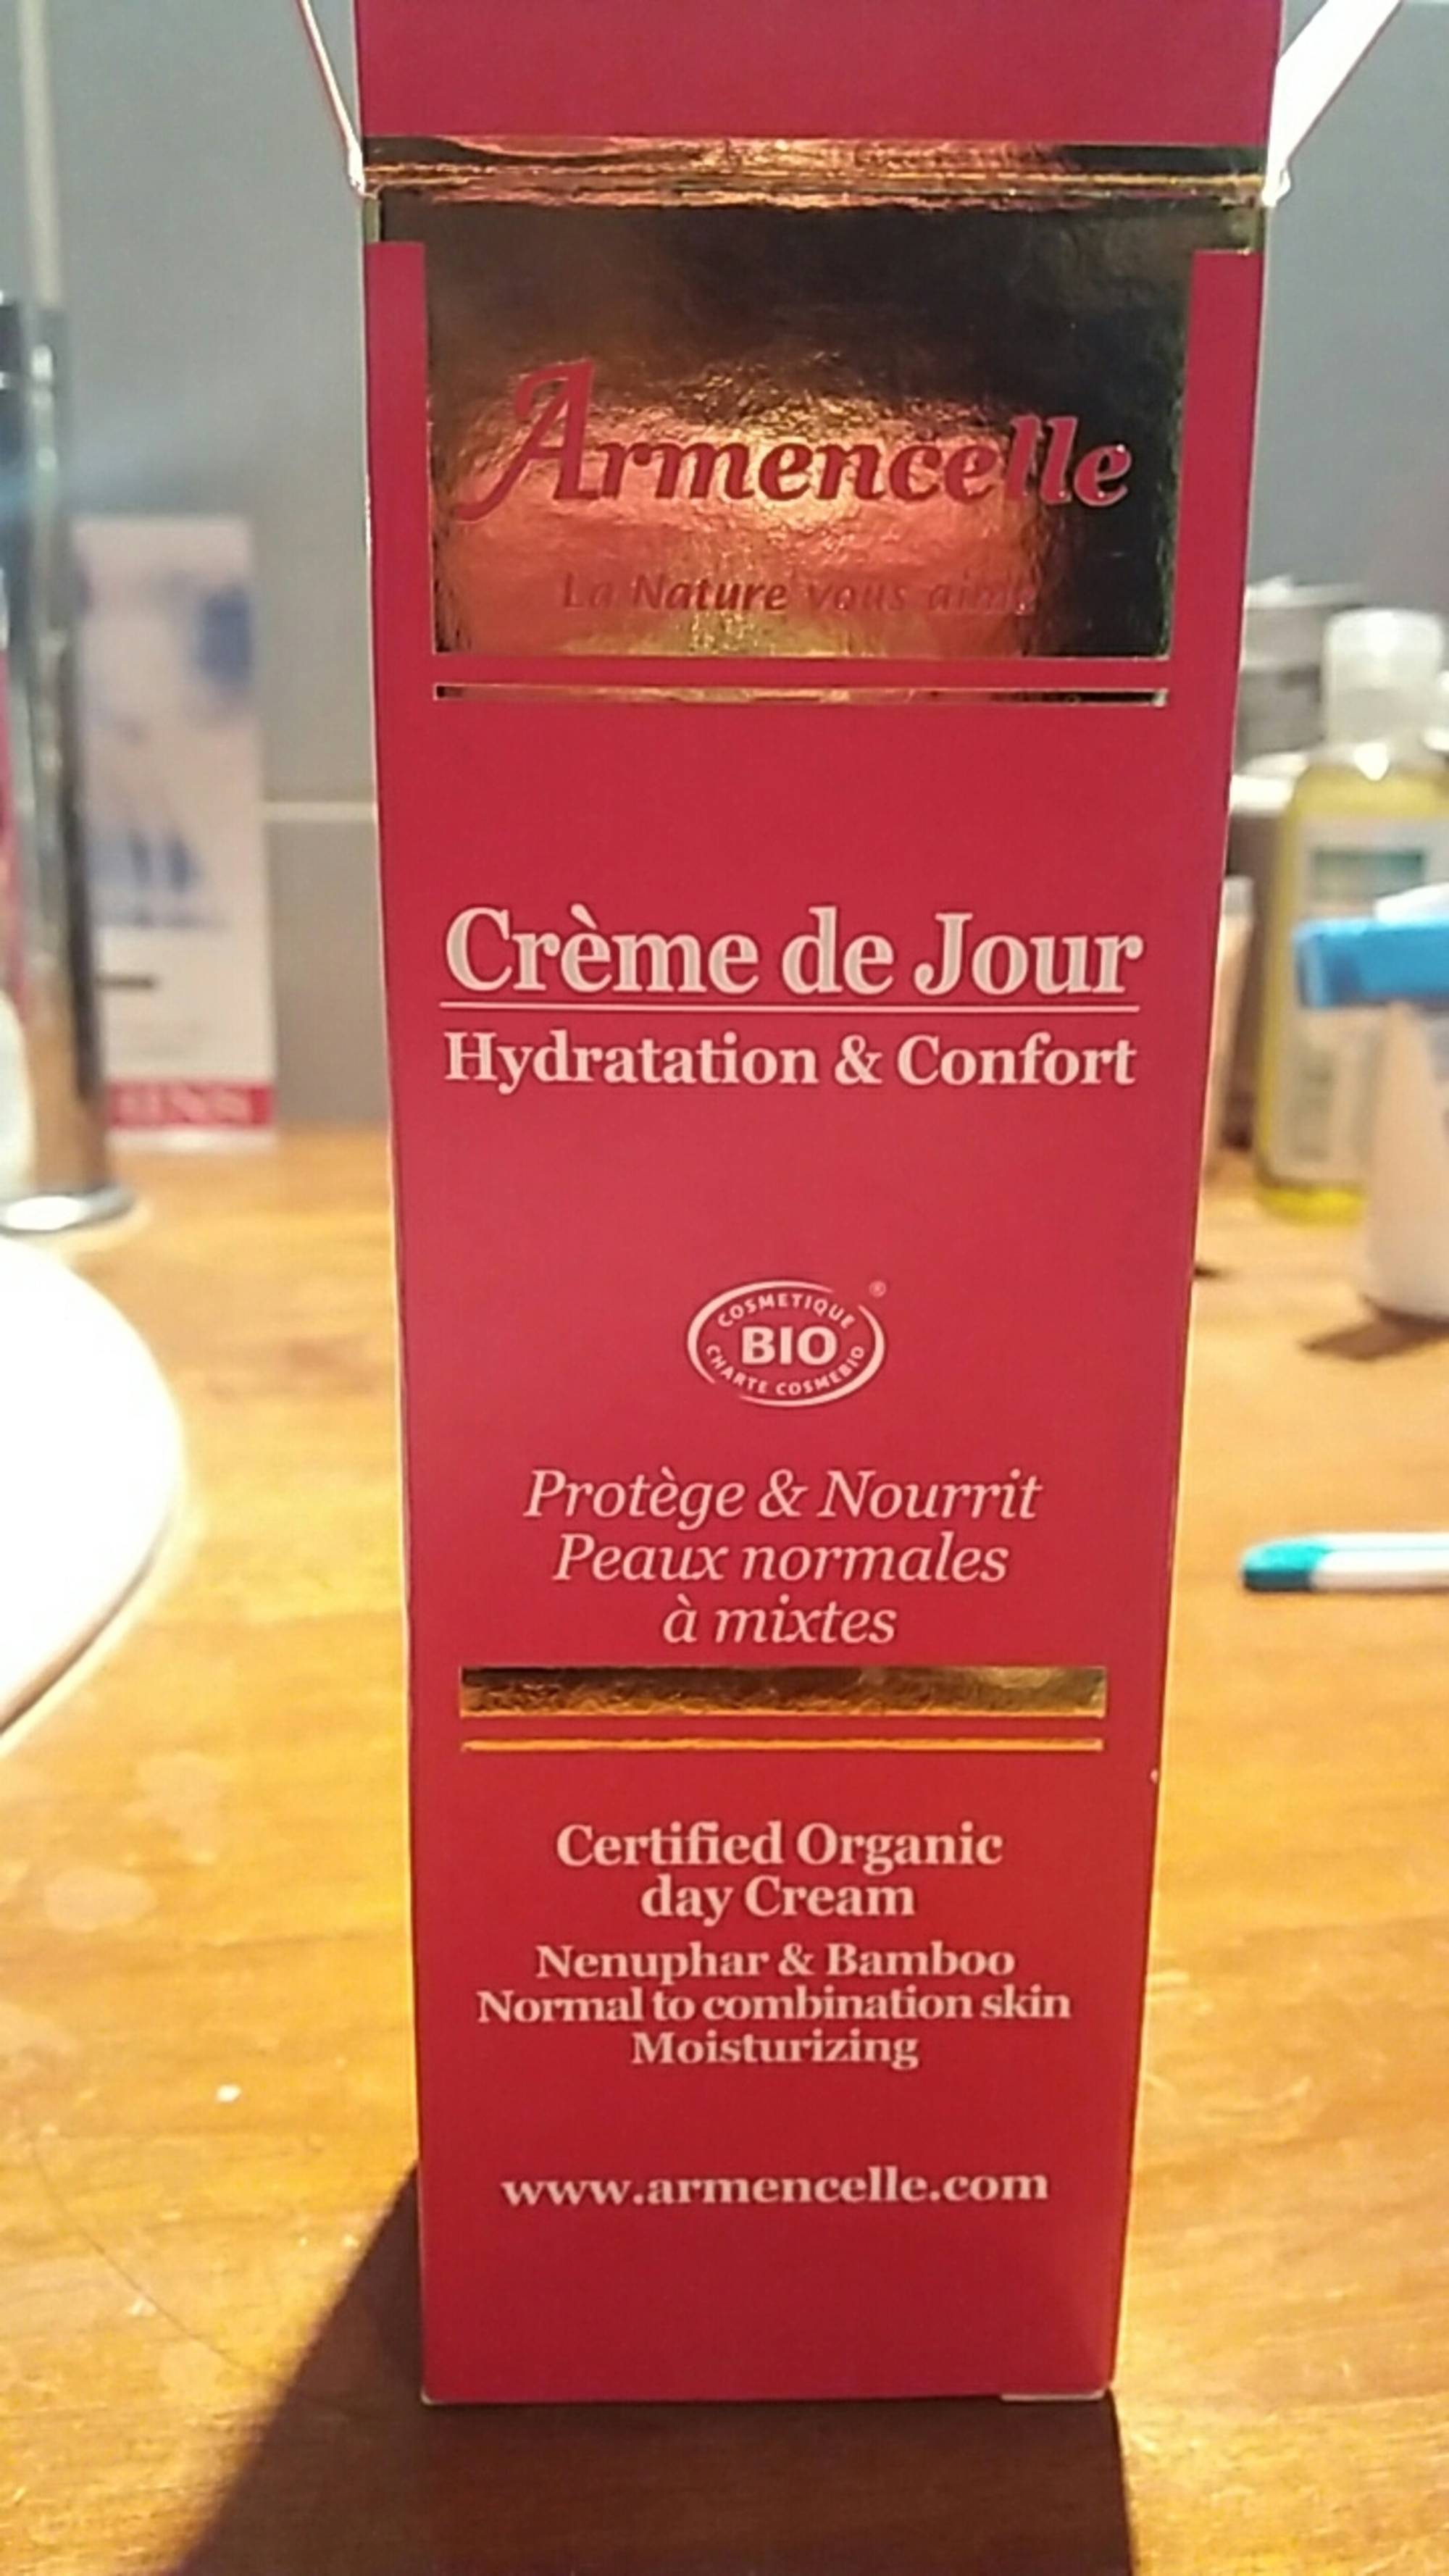 ARMENCELLE - Crème de jour Hydratation & Confort 